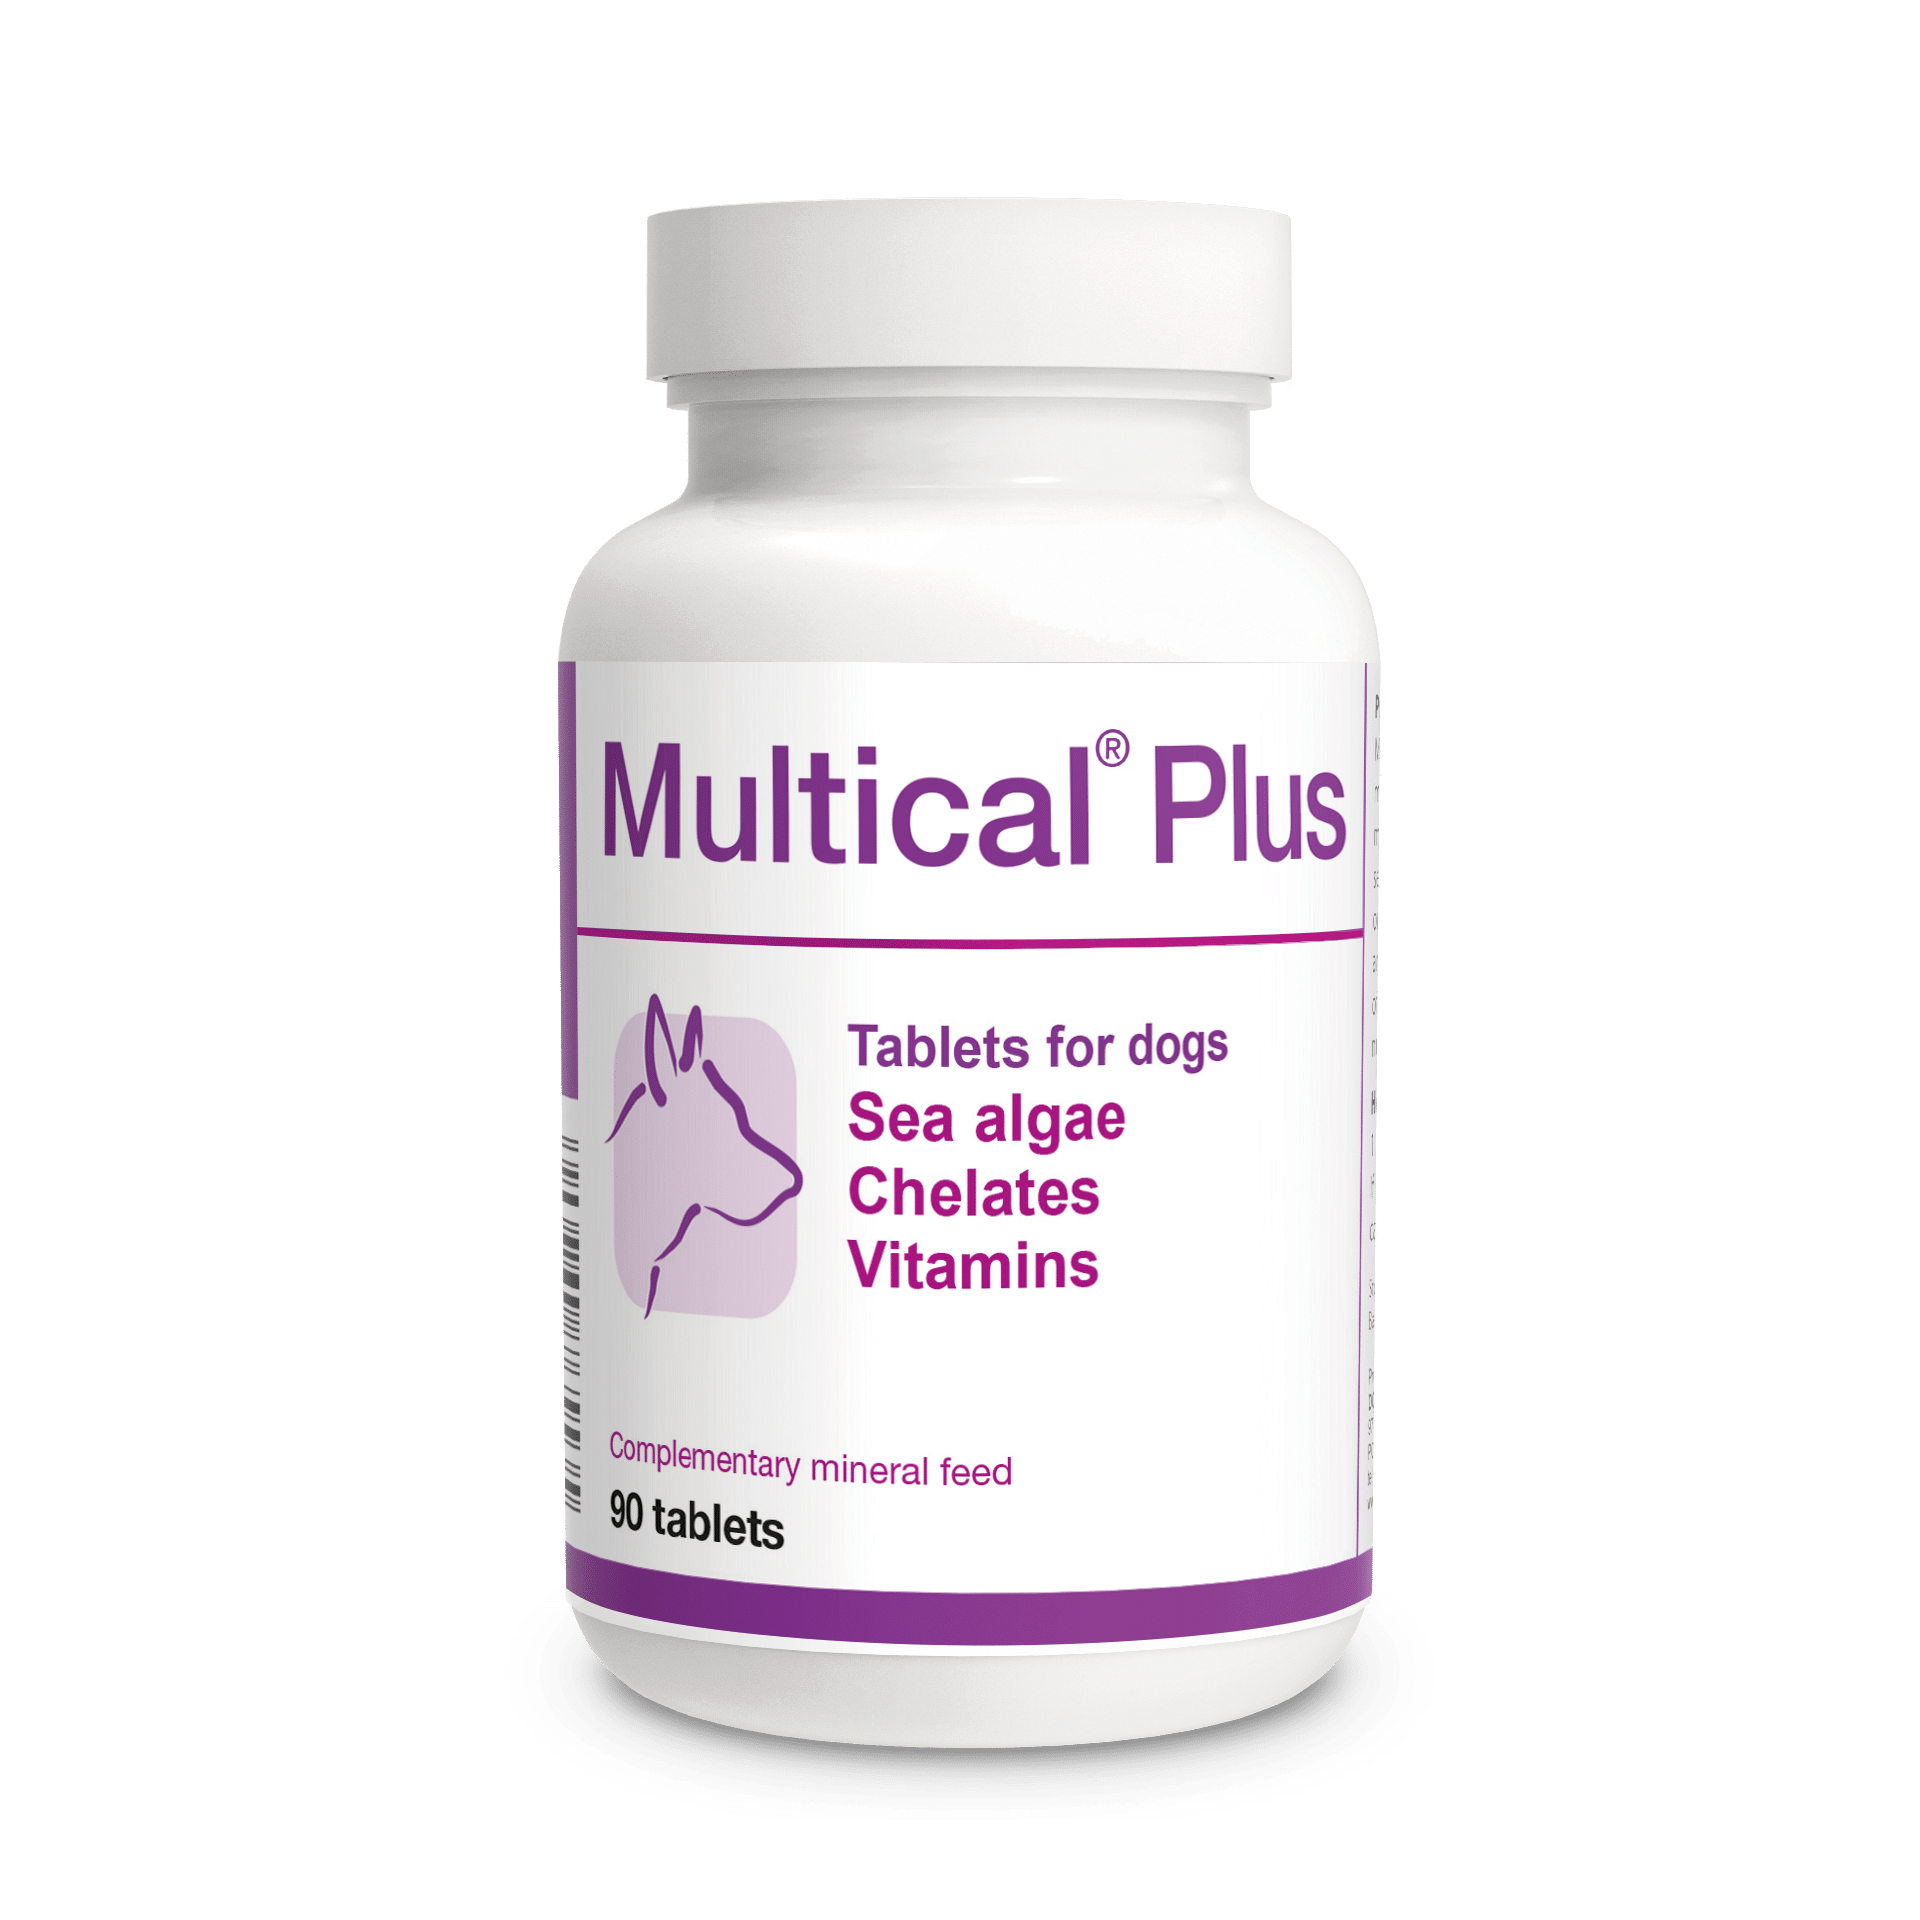 Multical Plus vitaminas y minerales para perros sonvitaminas, minerales y aminoácidos que mejoran el sistema inmunológico de los perros